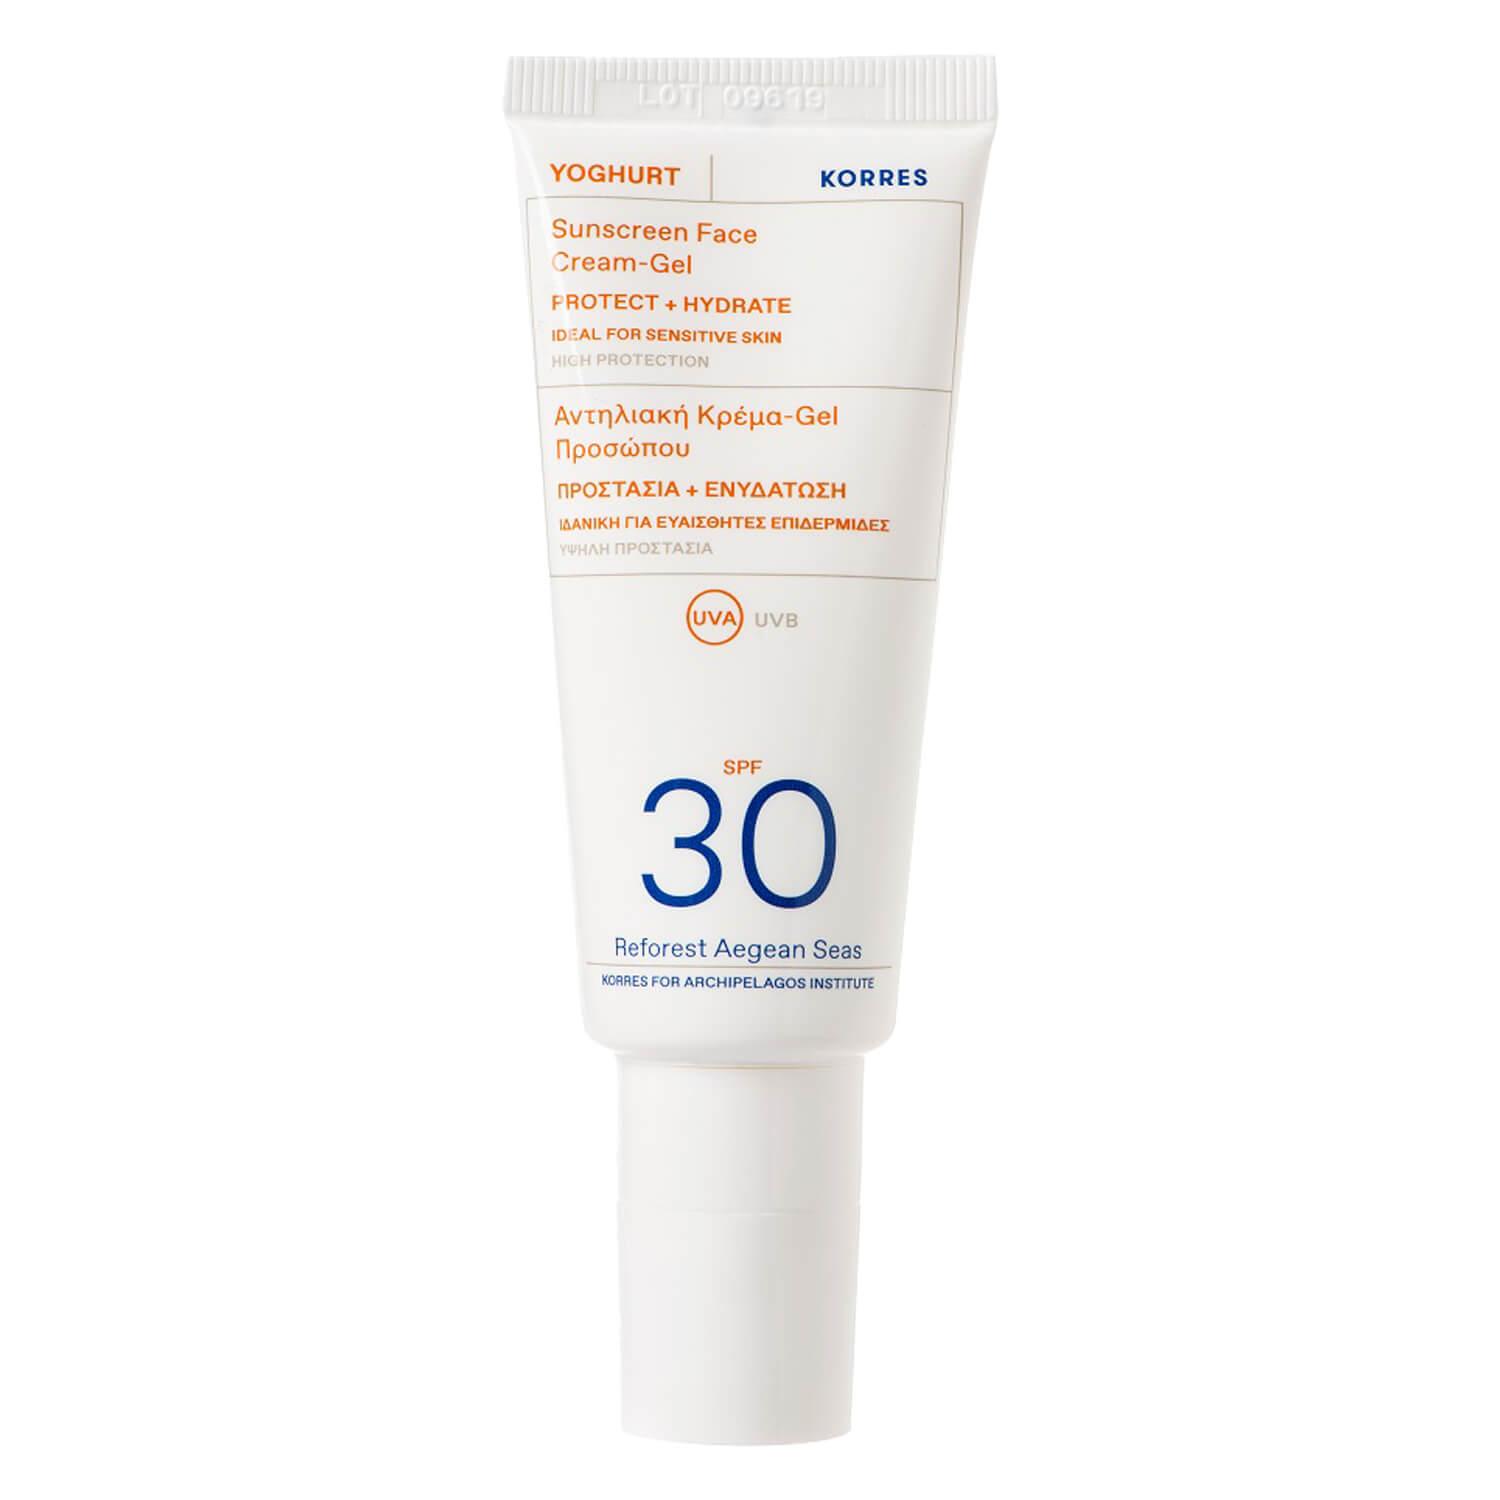 Korres Care - Yoghurt Gel-crème solaire pour le visage SPF30